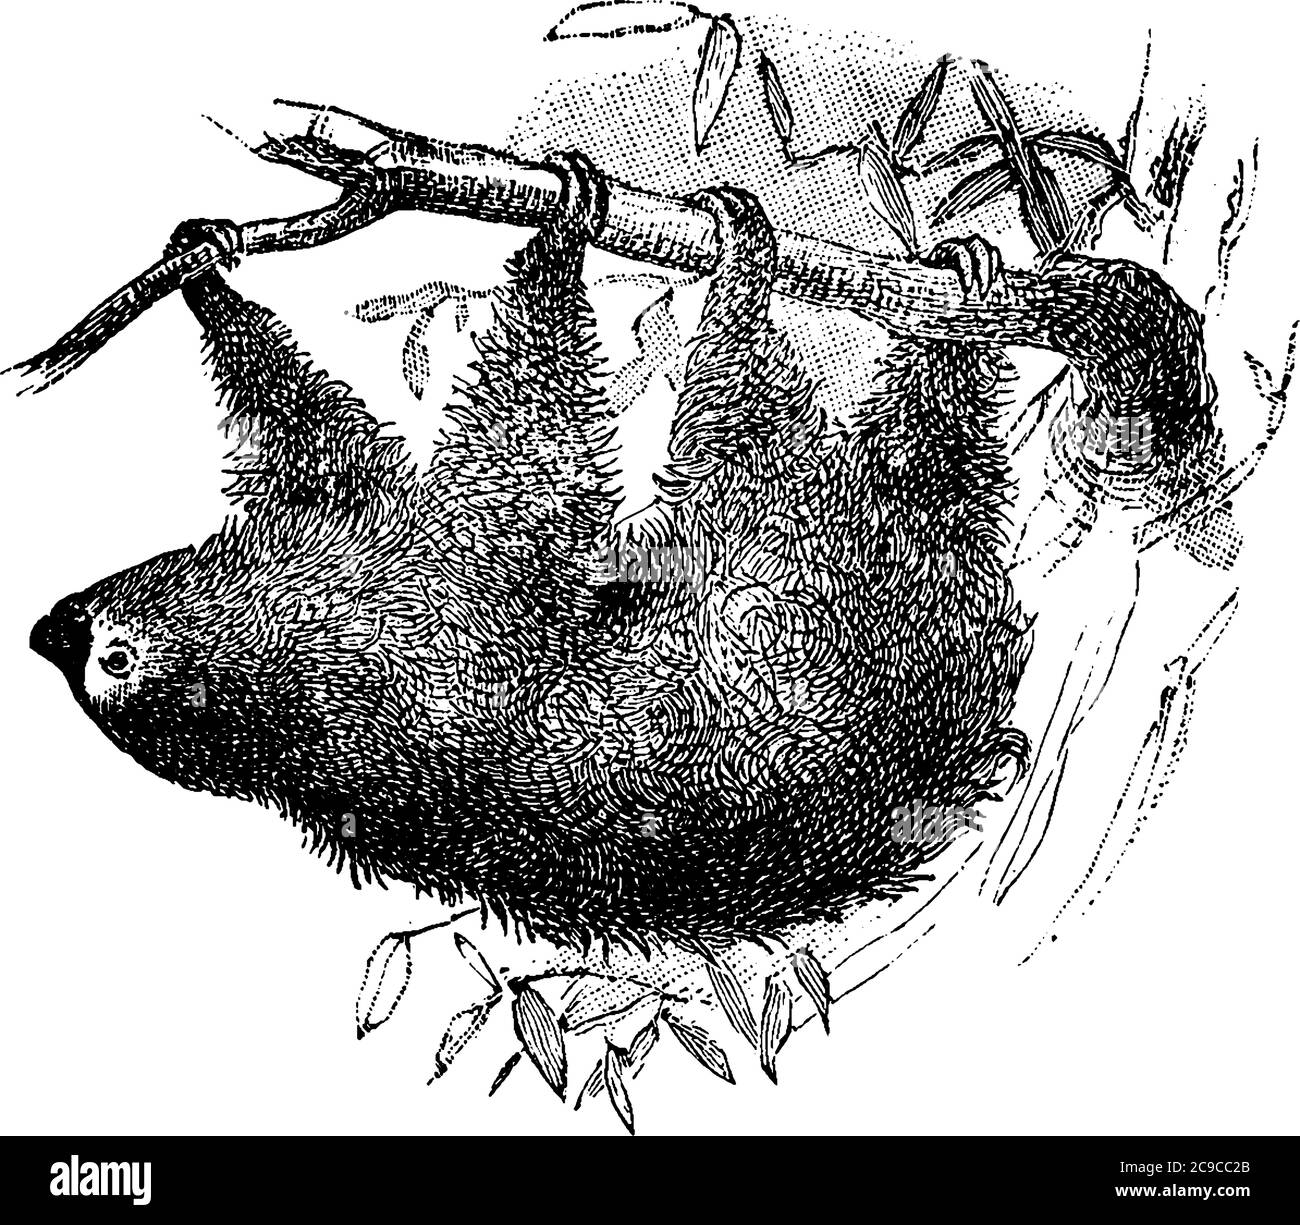 Un genere di mammiferi dentati tardigradati, compresi i bradipi unau o a due punte. Il nome Tardigradum significa escursionista lento e ha una lunga, pelliccia shaggy e un uomo Illustrazione Vettoriale